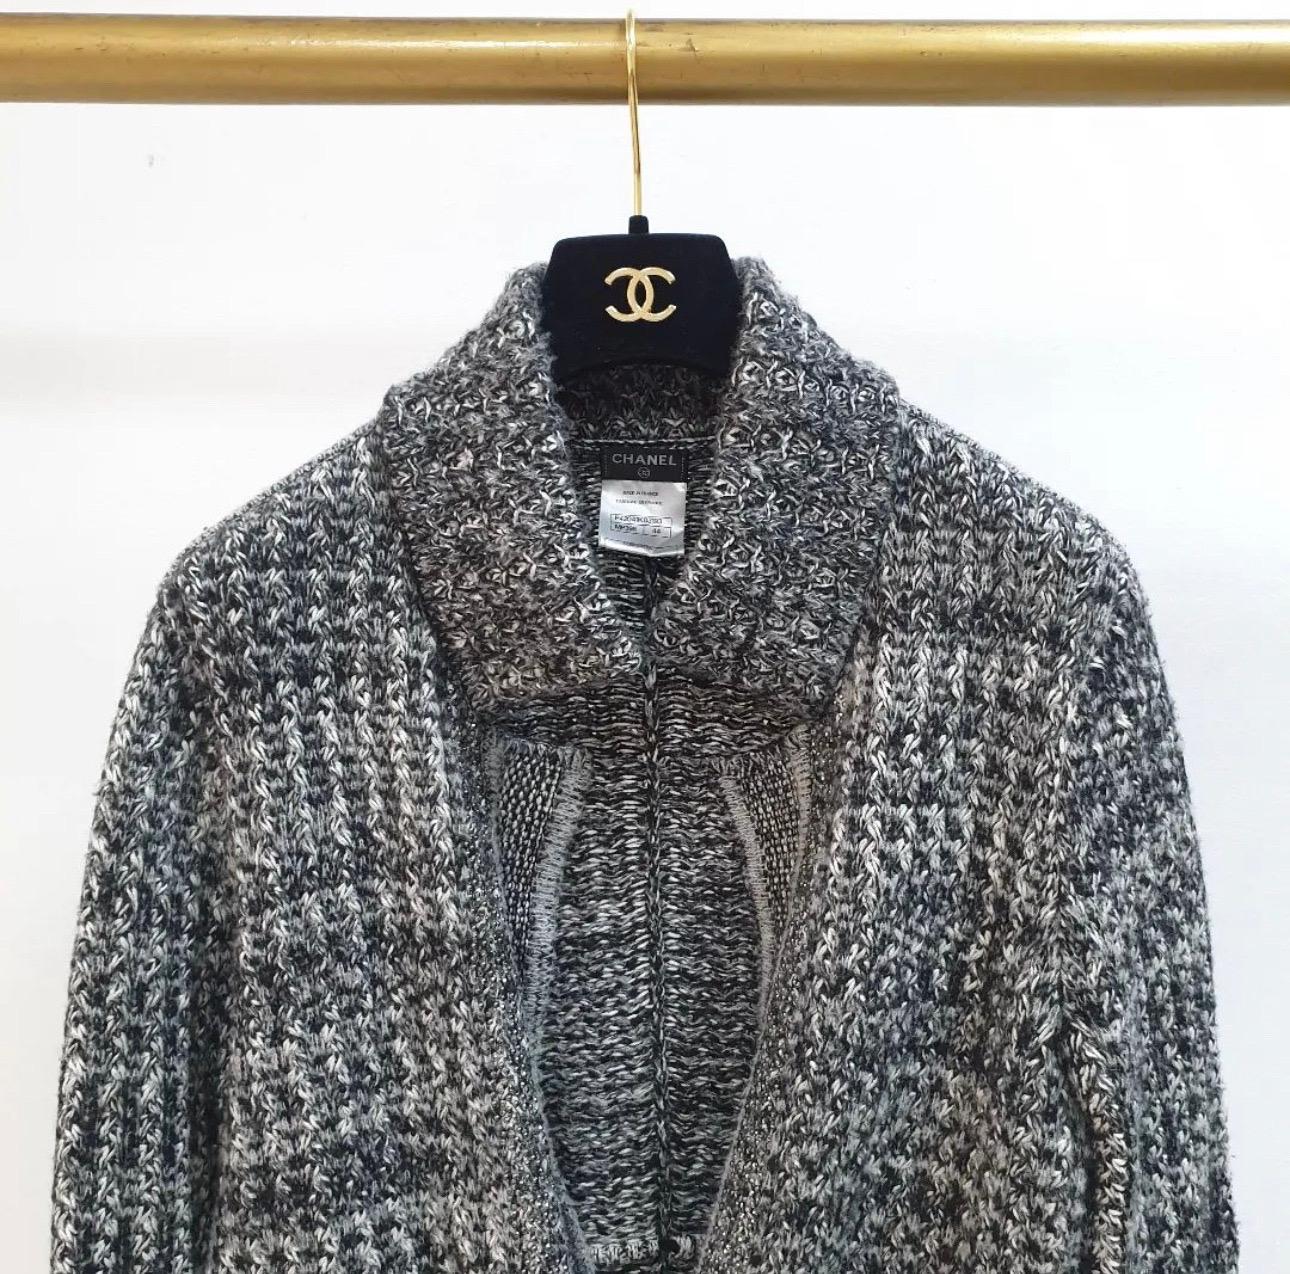 Magnifique veste en cachemire gris, noir et blanc, fermée par une chaîne argentée avec le logo Chanel.
cachemire (38%), soie (38%), laine (17%) et nylon (7%). 
Deux poches ouvertes sur le devant. 
Se noue avec de la dentelle sur le devant.